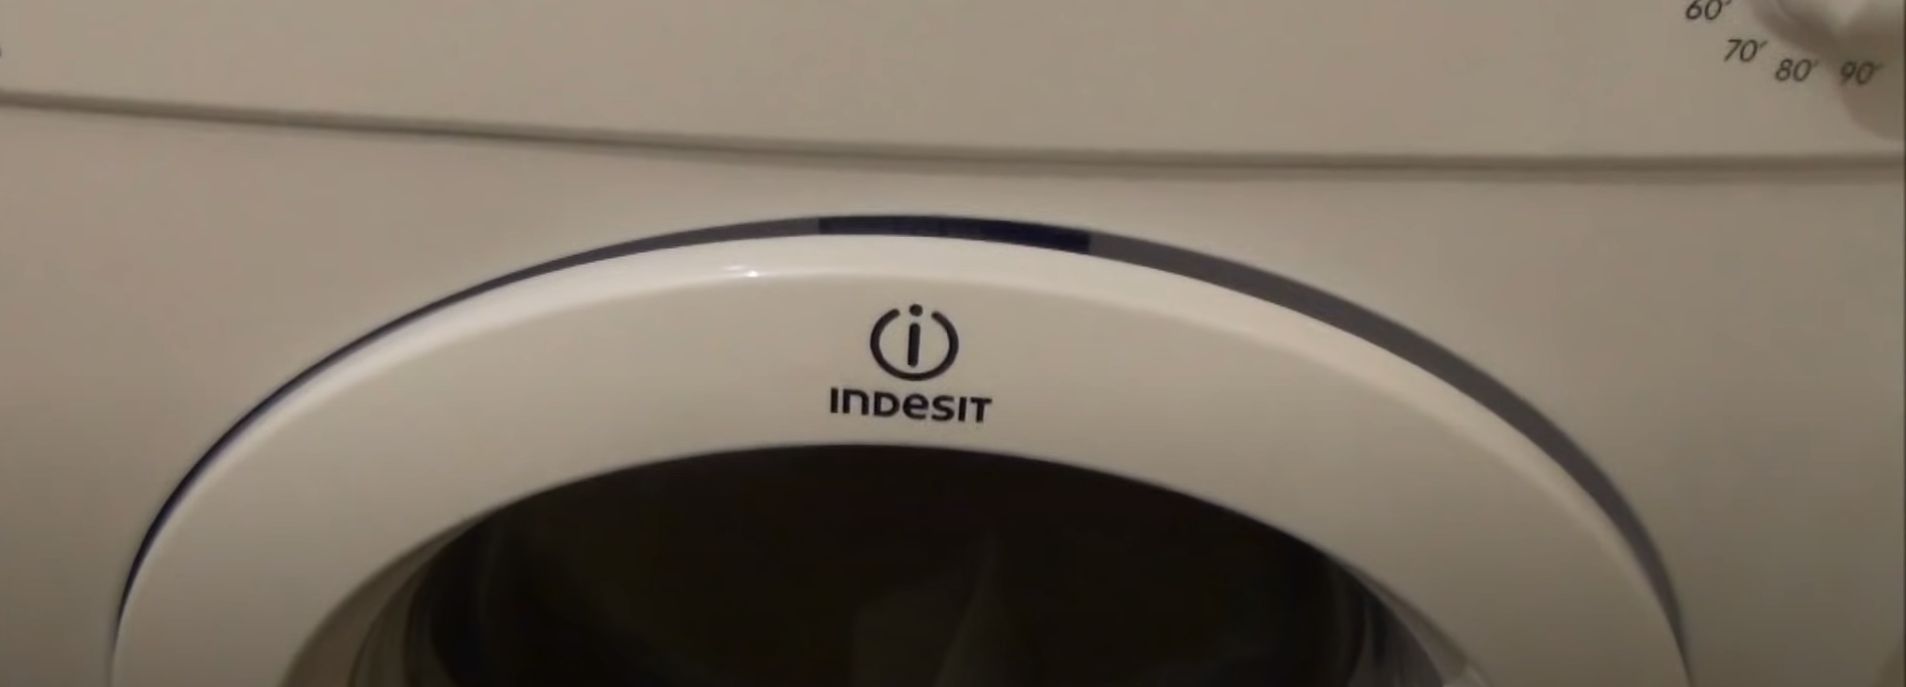 Indesit Tumble Dryer door closed